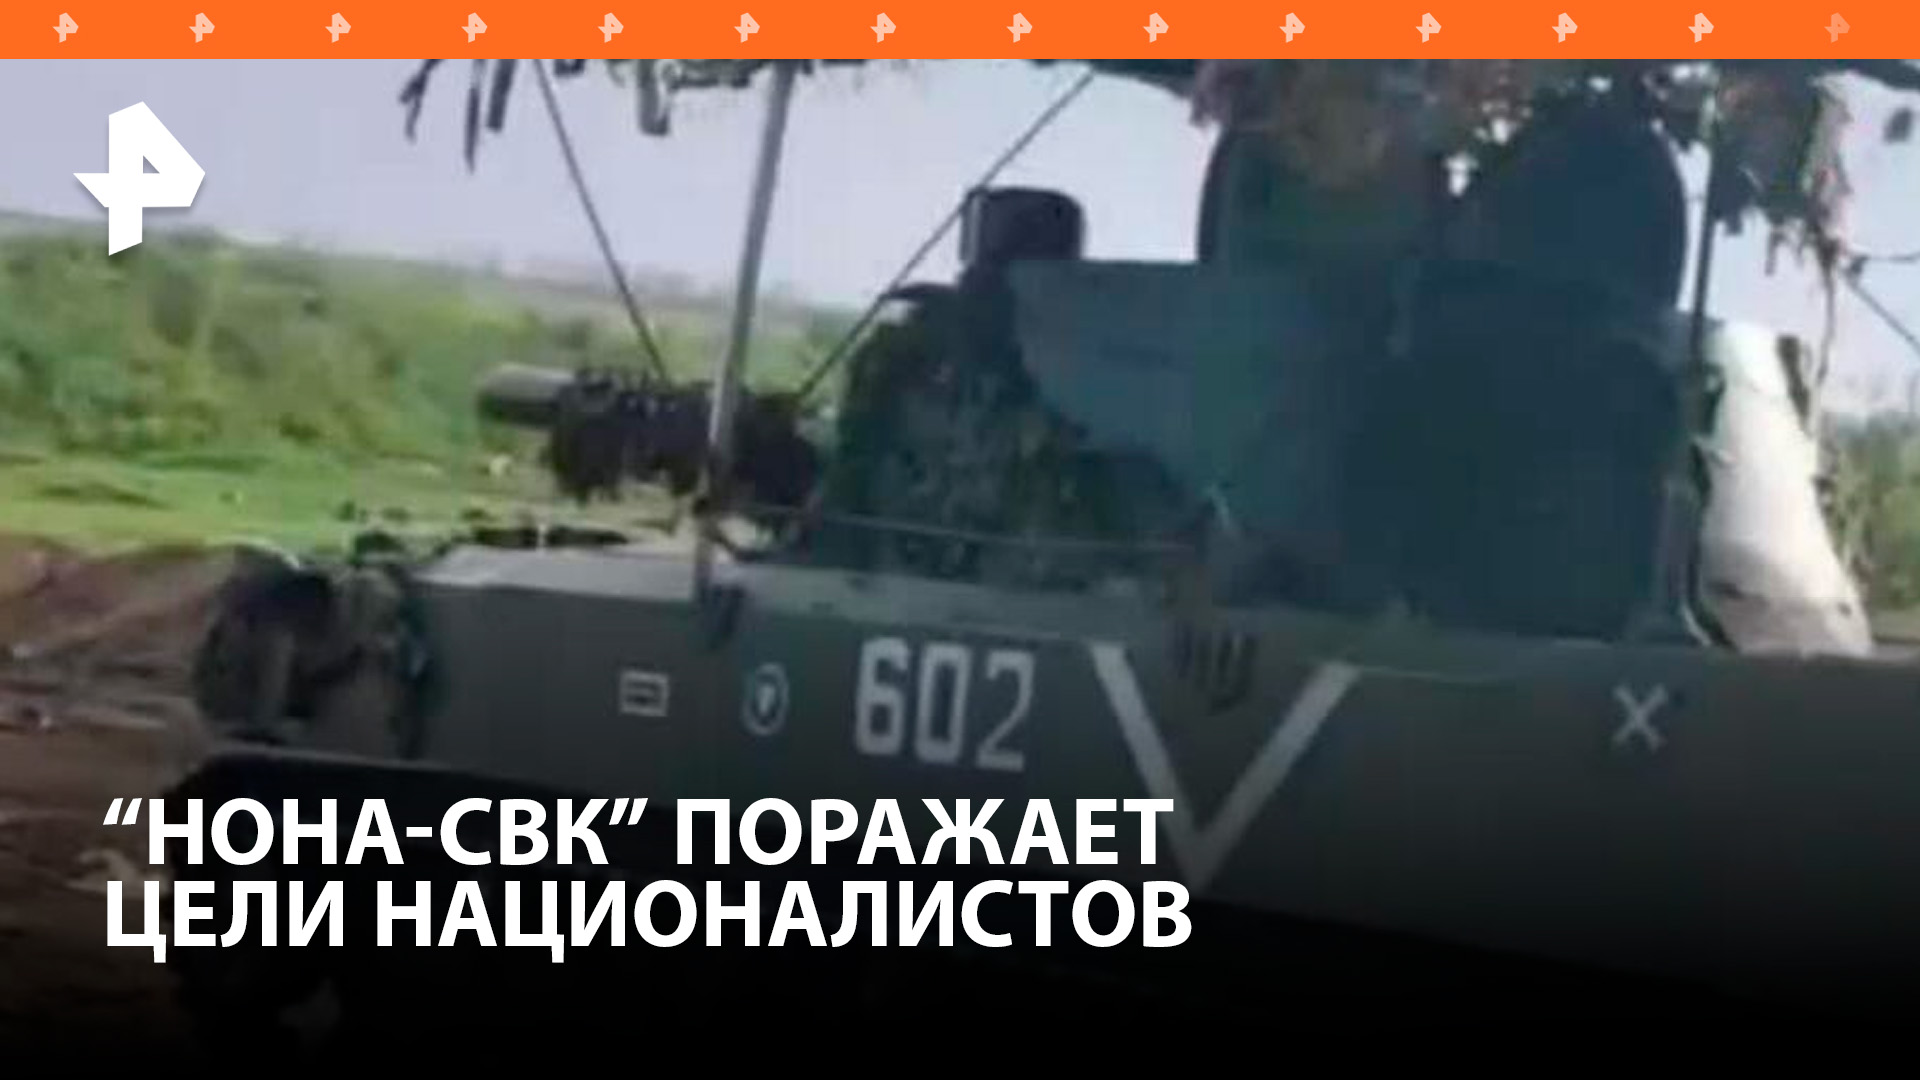 Минометы "Нона" уничтожили бронетехнику ВСУ в зоне СВО / РЕН Новости